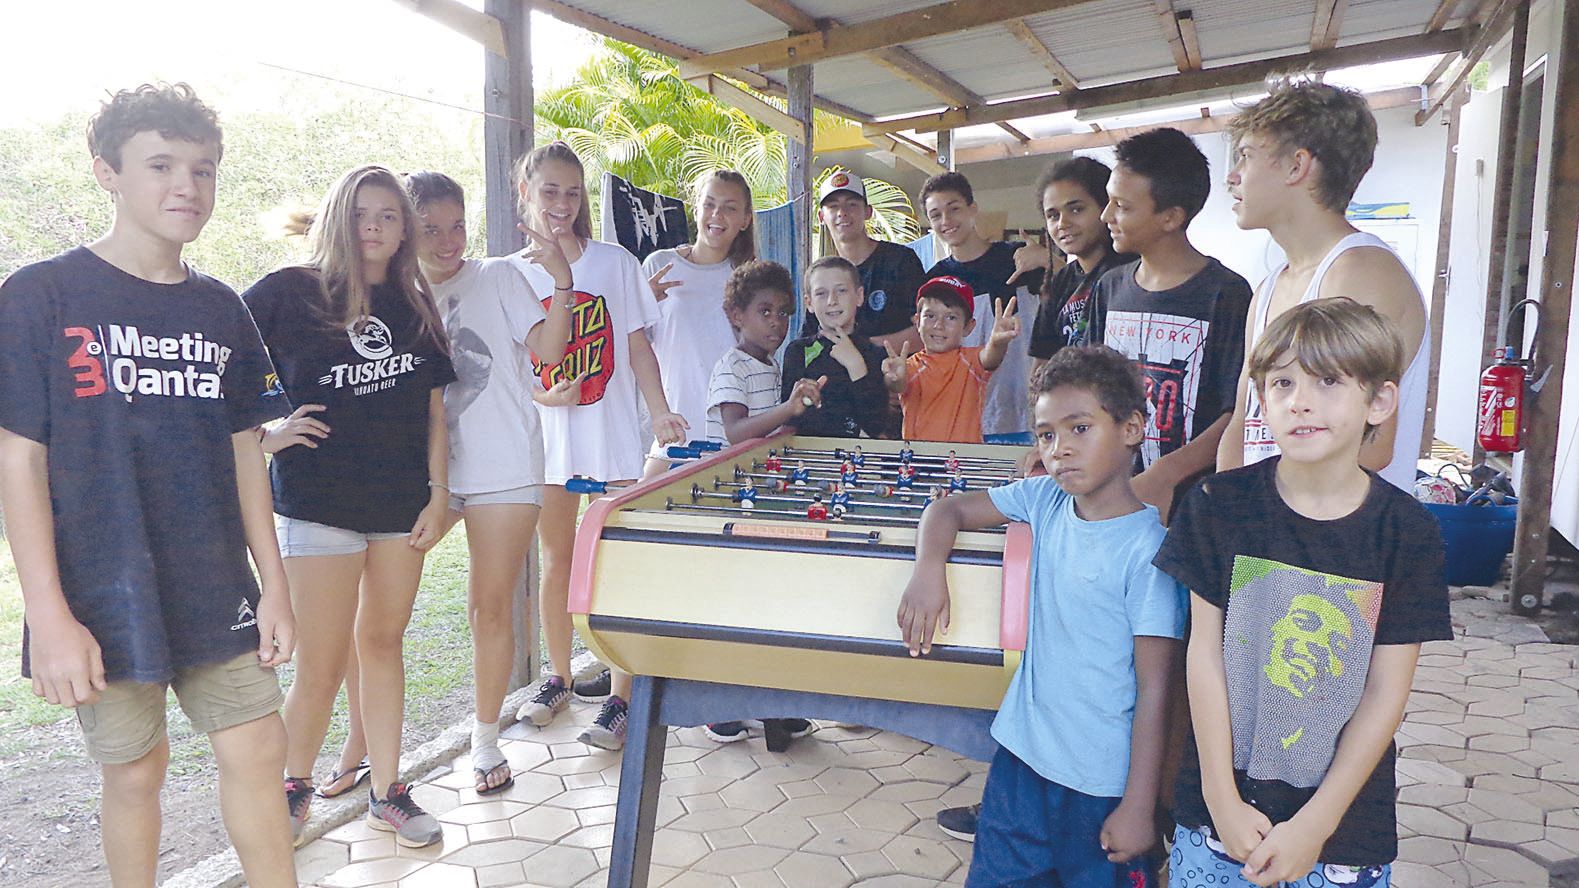 Le centre de vacances Doucampo, dirigé par Yanita Delpias, est situé en pleine nature, à La Ouenghi. Il a accueilli  cinquante vacanciers, trente enfants âgés de 6 à 12 ans et vingt adolescents âgés de 13 à 16 ans.